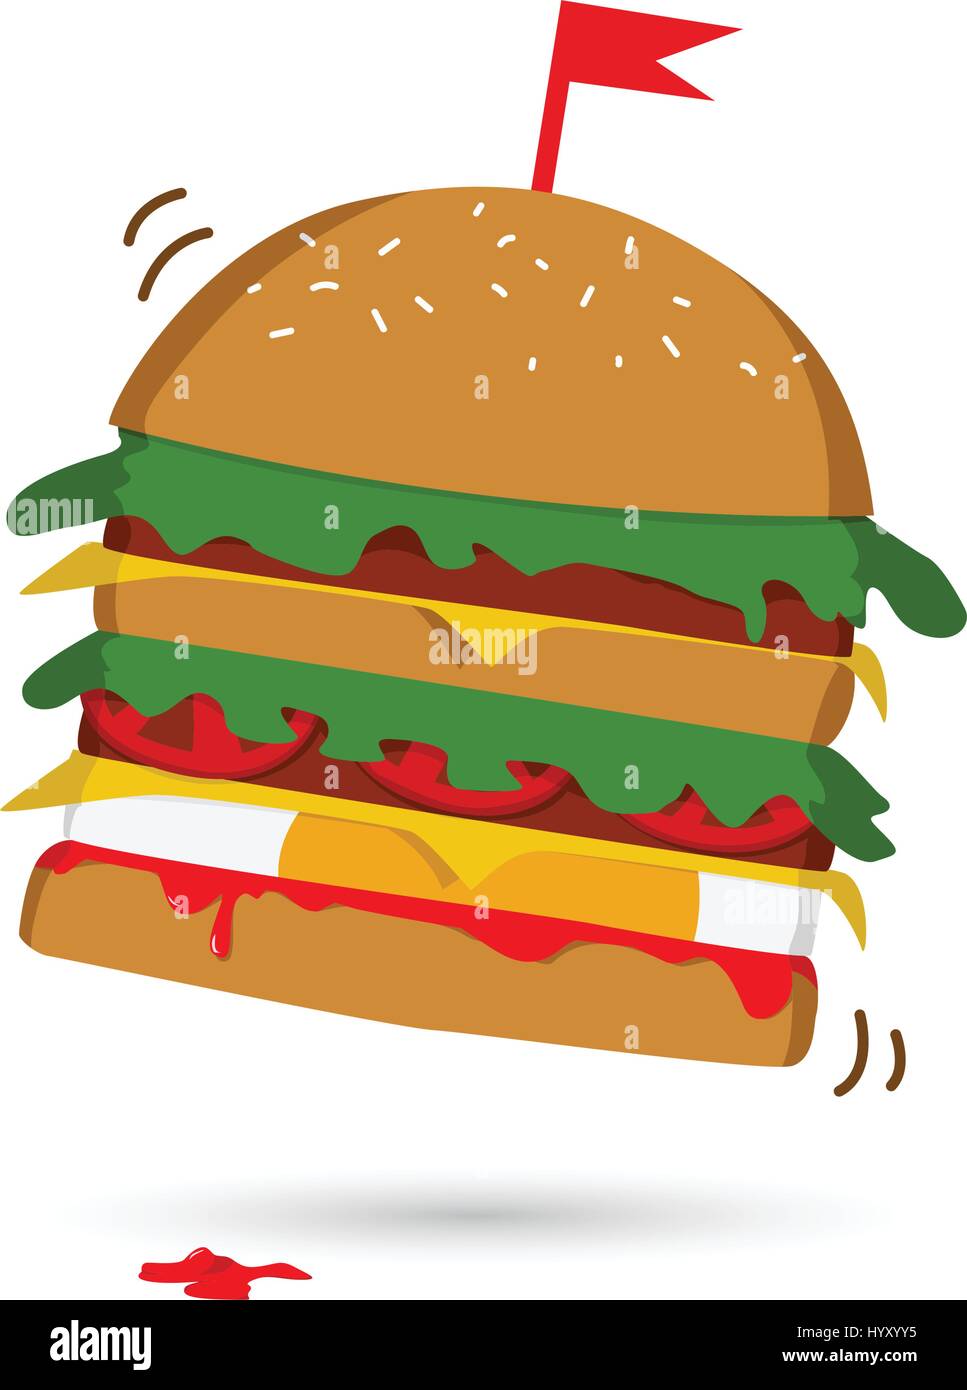 Vektor-Illustration der Burger. Hamburger mit Fleisch, Salat, Gurken, Käse und Tomate. Stock Vektor